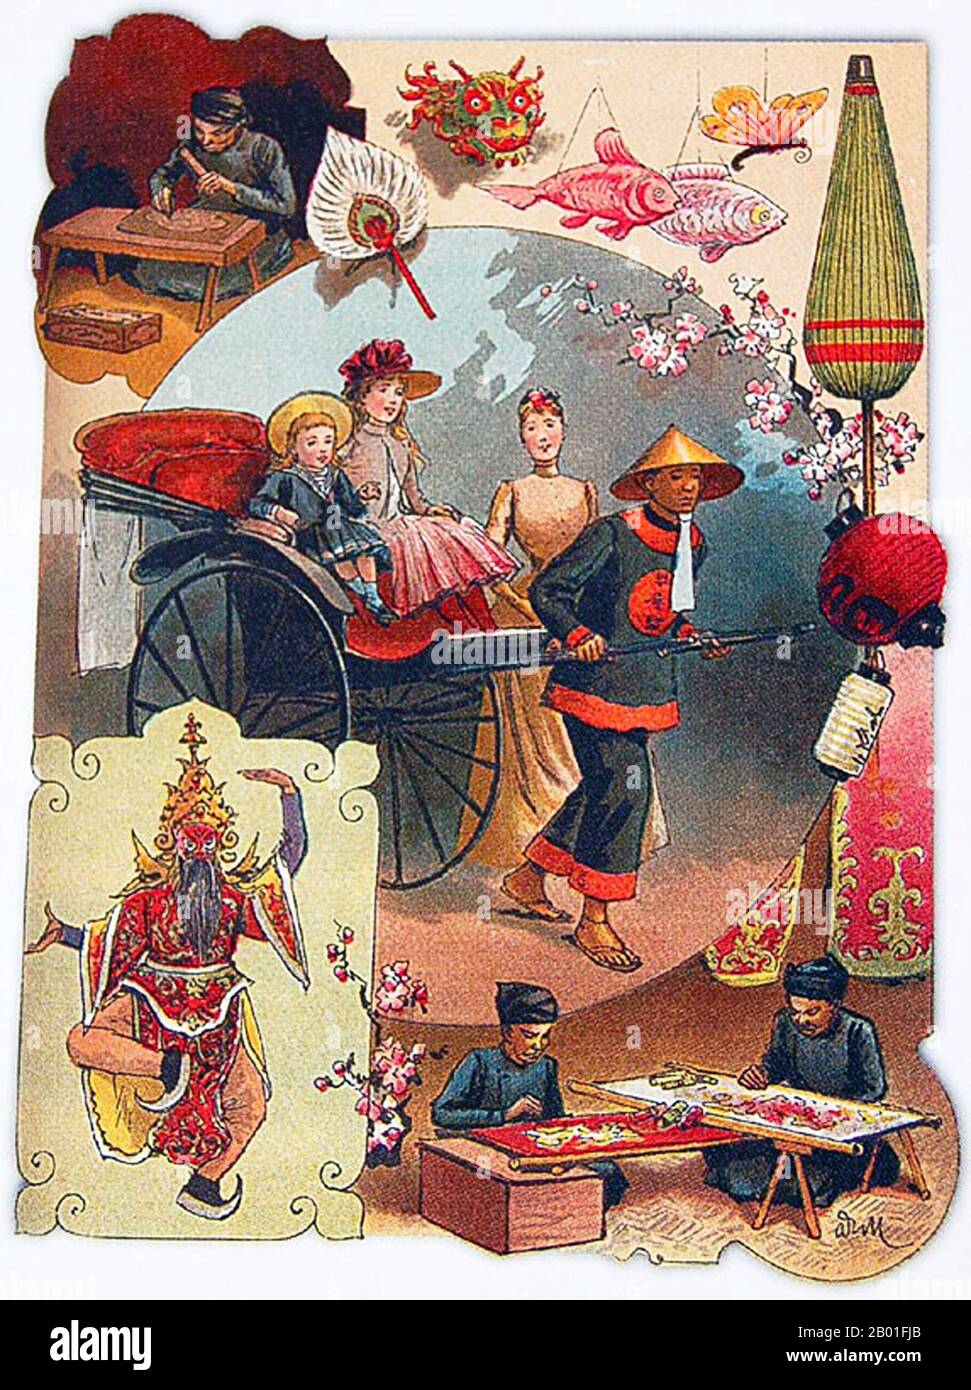 Vietnam: Werbung für die Expo Indochine, Paris, 1889. 1863 wurde Kambodscha zu einem Protektorat Frankreichs. Im Oktober 1887 kündigten die Franzosen die Gründung der Union Indochinoise (Union Indochina) an, die damals Kambodscha und die drei Regionen Vietnams (Tonkin, Annam und Cochinchina) umfasste. 1893 wurde Laos ebenfalls annektiert. Stockfoto